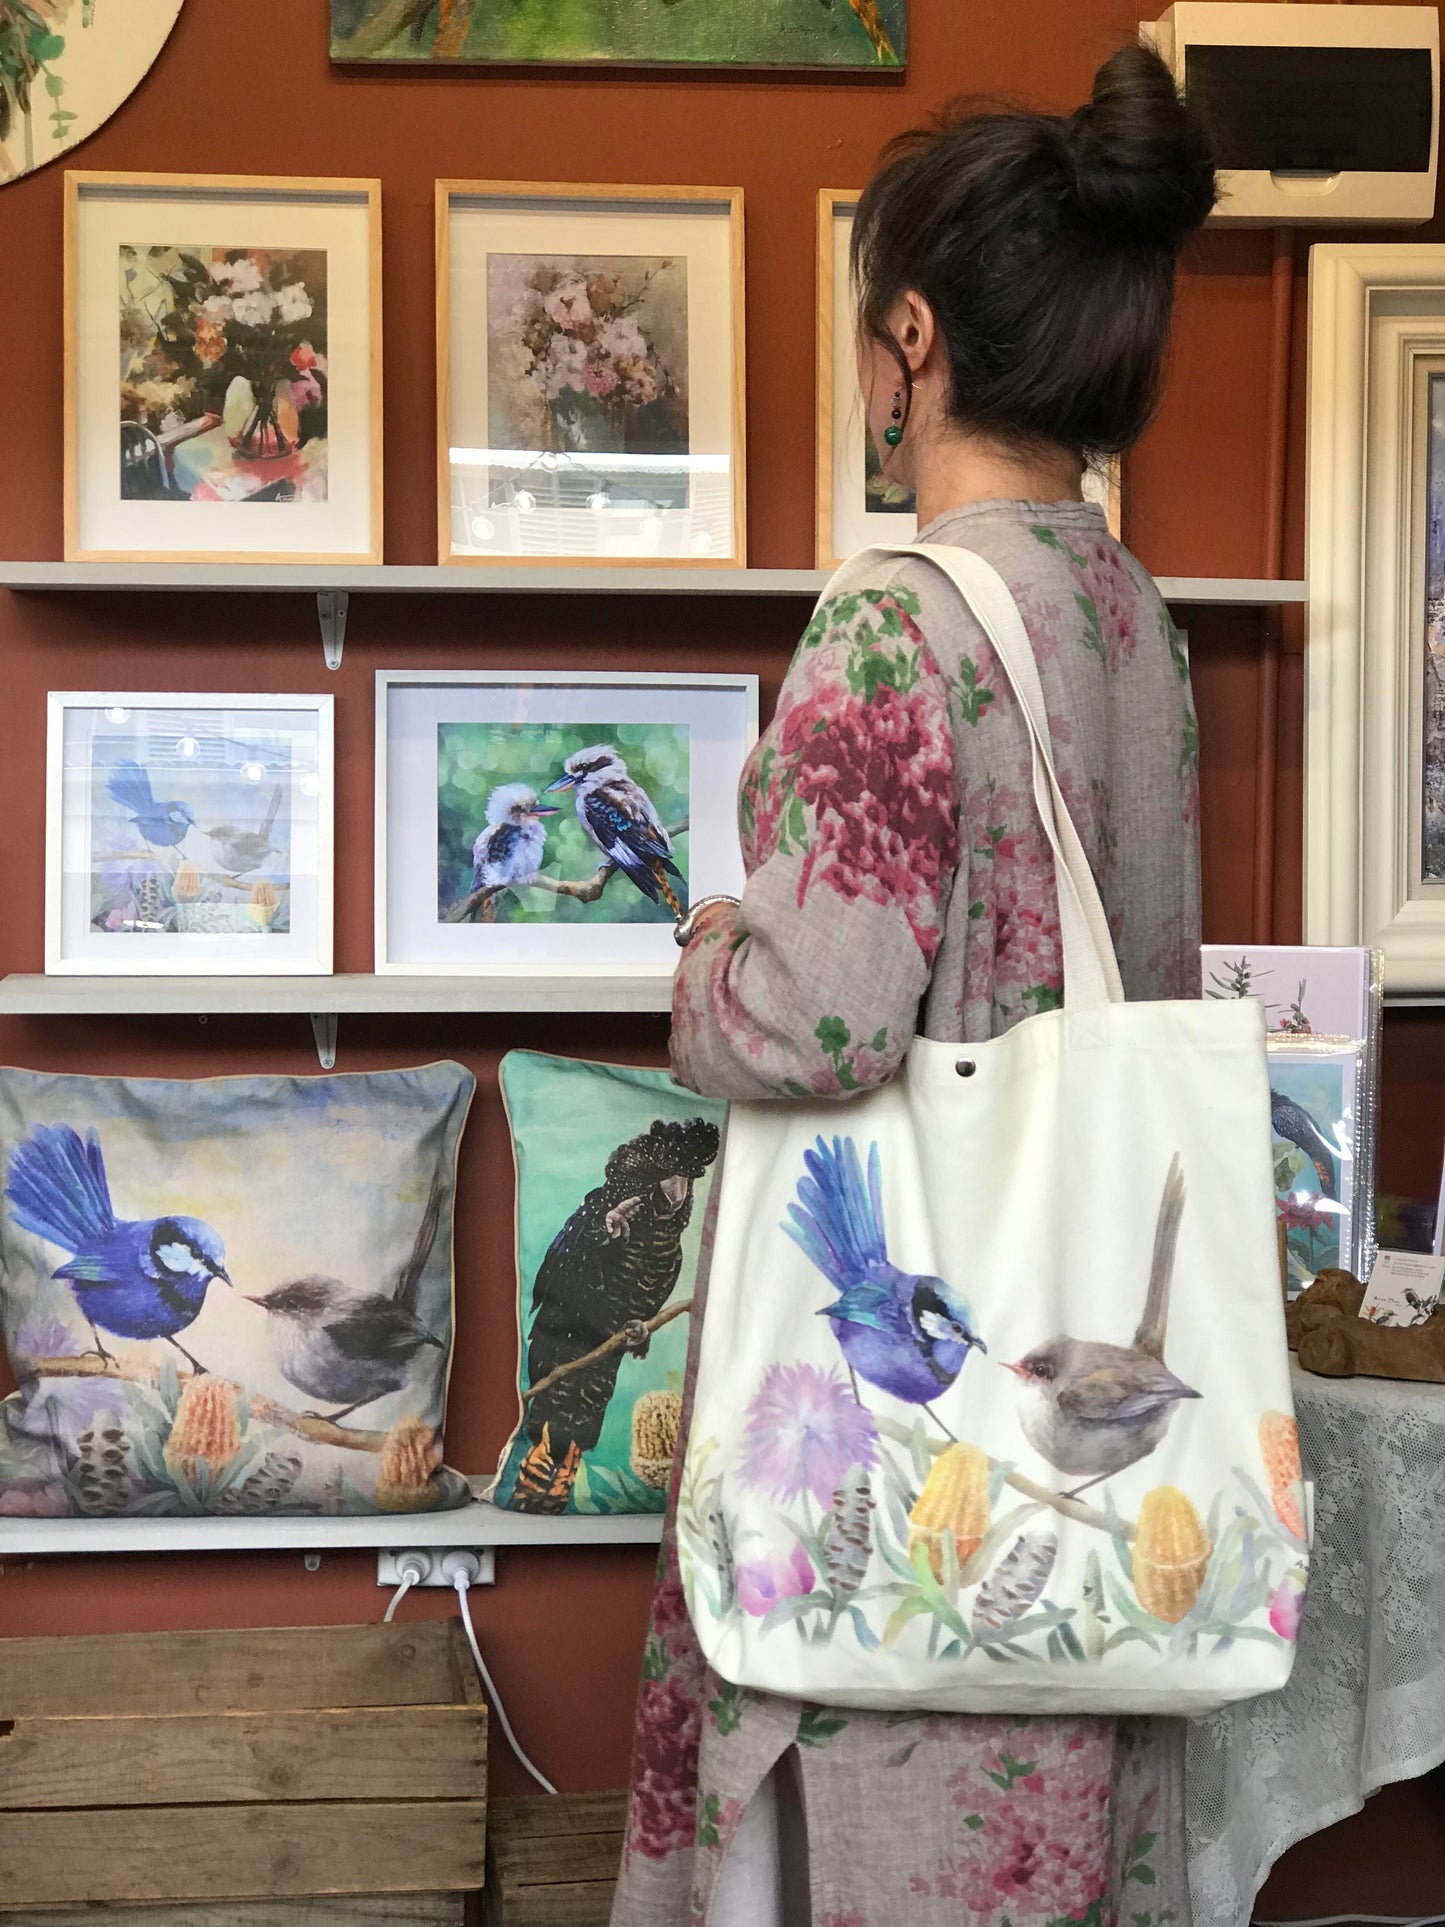 Blue Wren Tote Bag,Art Bag,Gift,Australian Bird